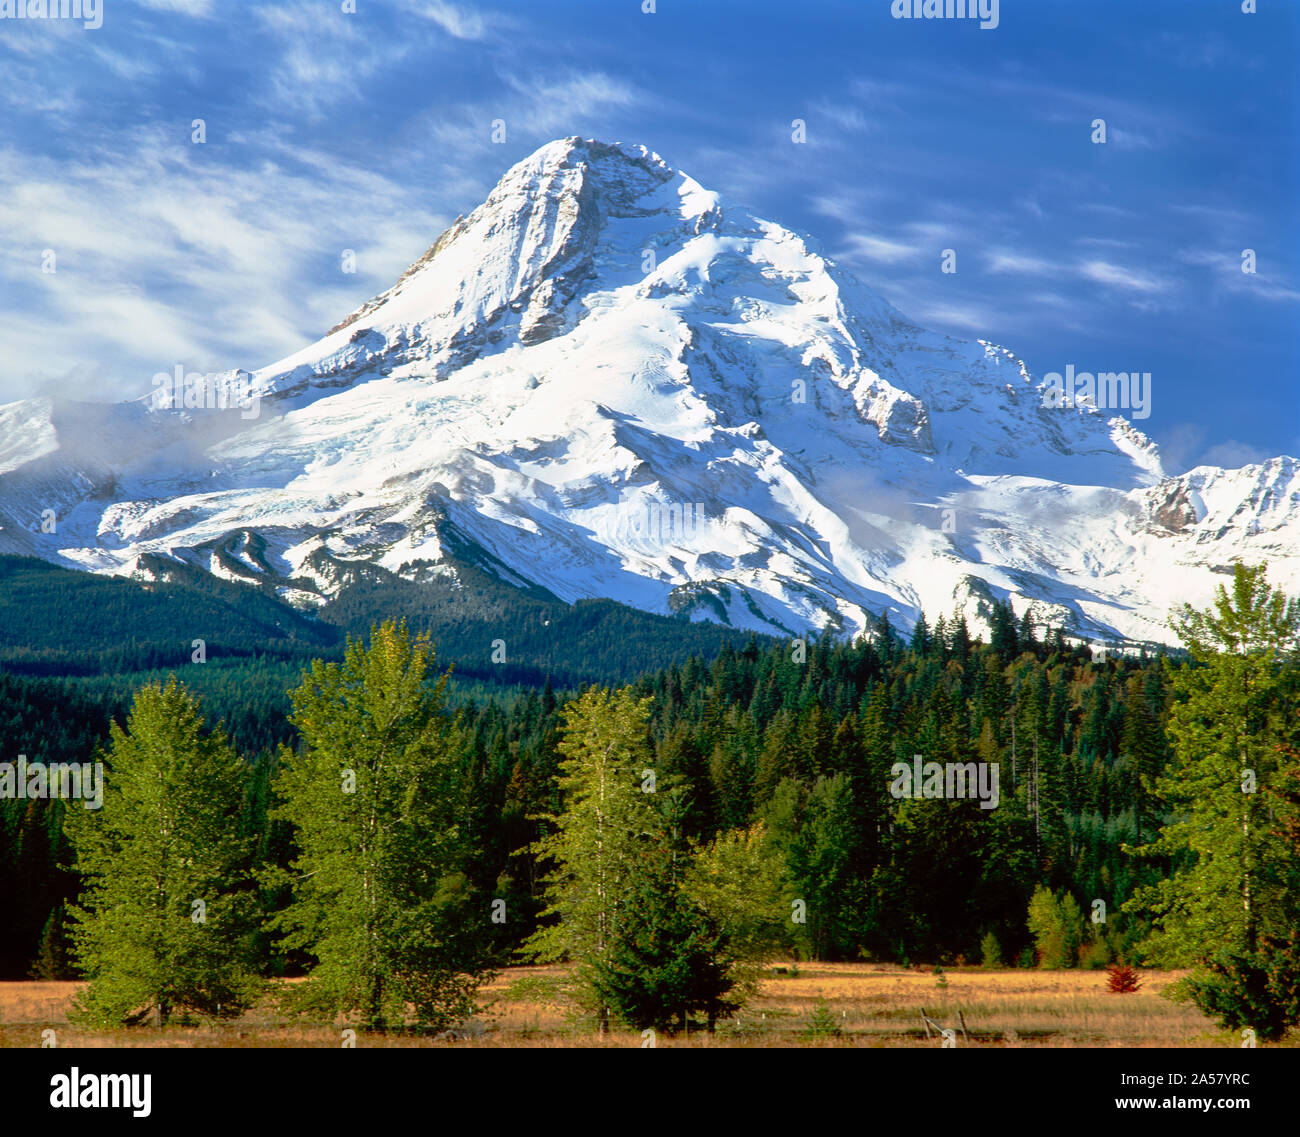 Avec arbres de montagnes aux sommets enneigés en arrière-plan, Mt Hood, le capot supérieur River Valley, comté de Hood River, Oregon, USA Banque D'Images